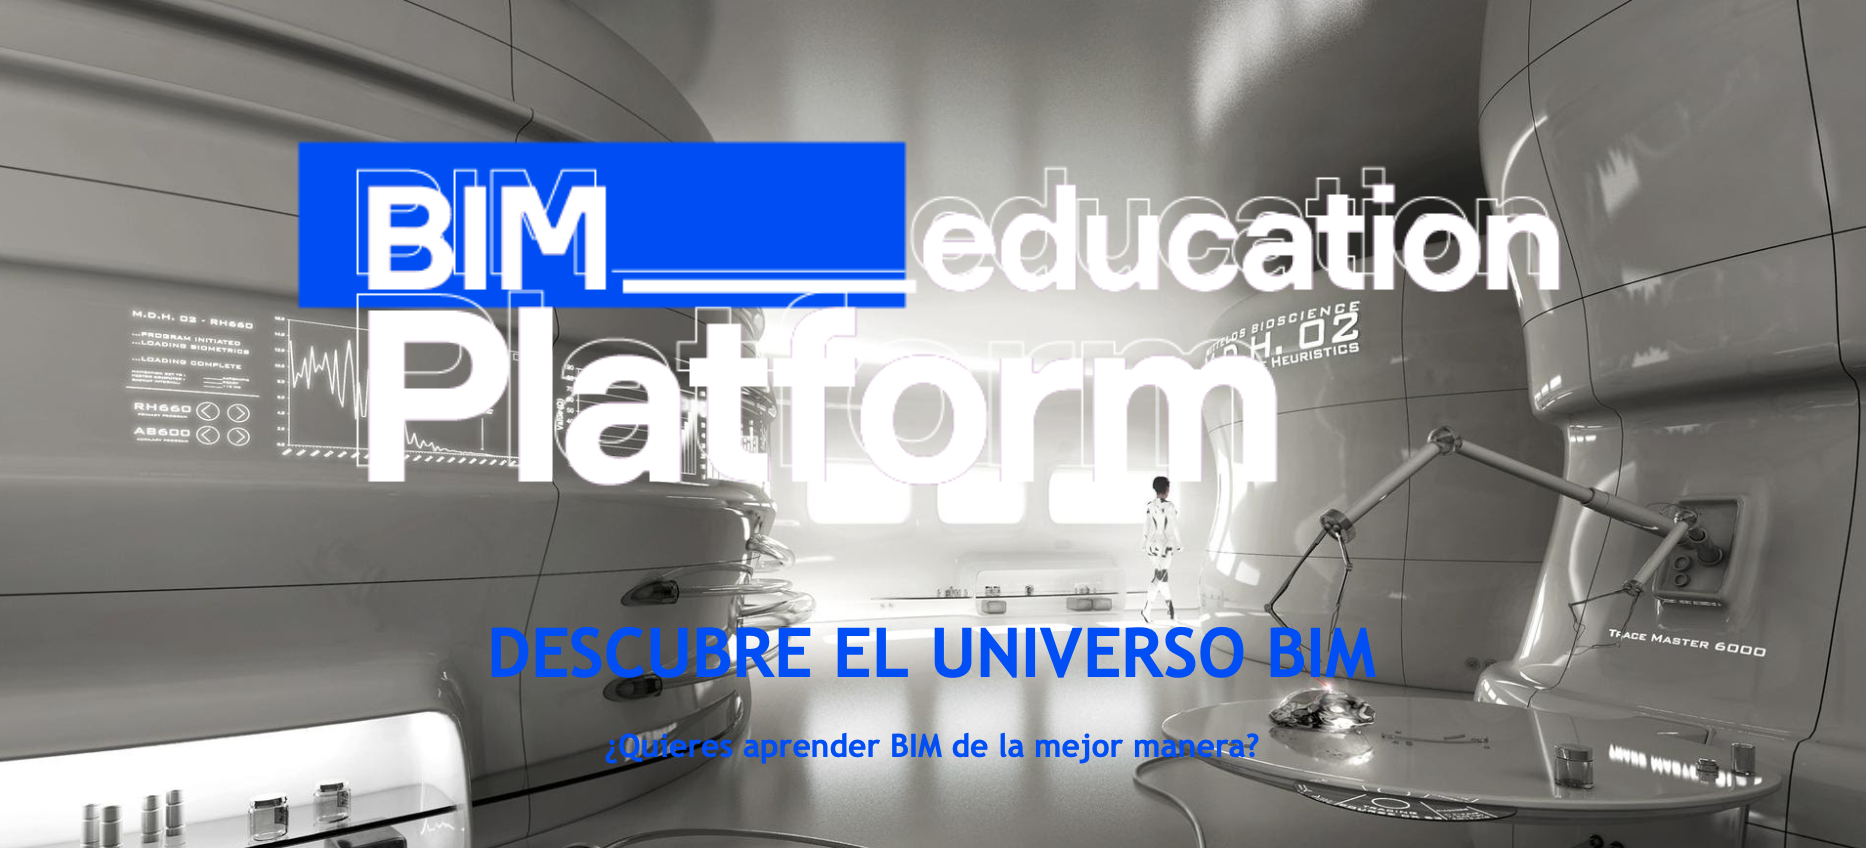 Testimonios ./ BIm Ed. Platform (By Miller&Co) ¿Como percibe la gente a esta Plataforma Educativa BIM?